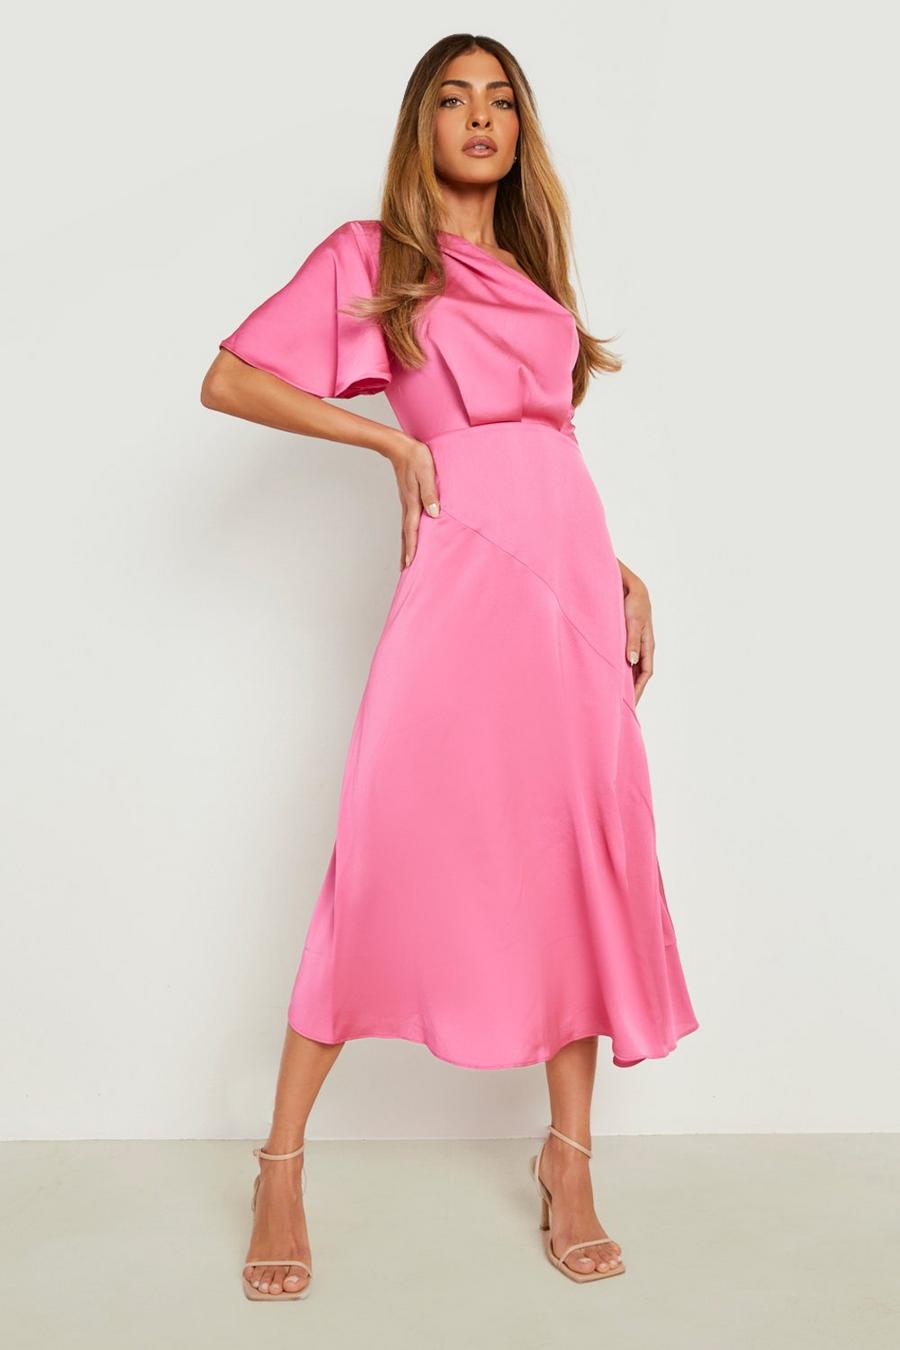 Hot pink rosa Satin Asymetric Midaxi Dress